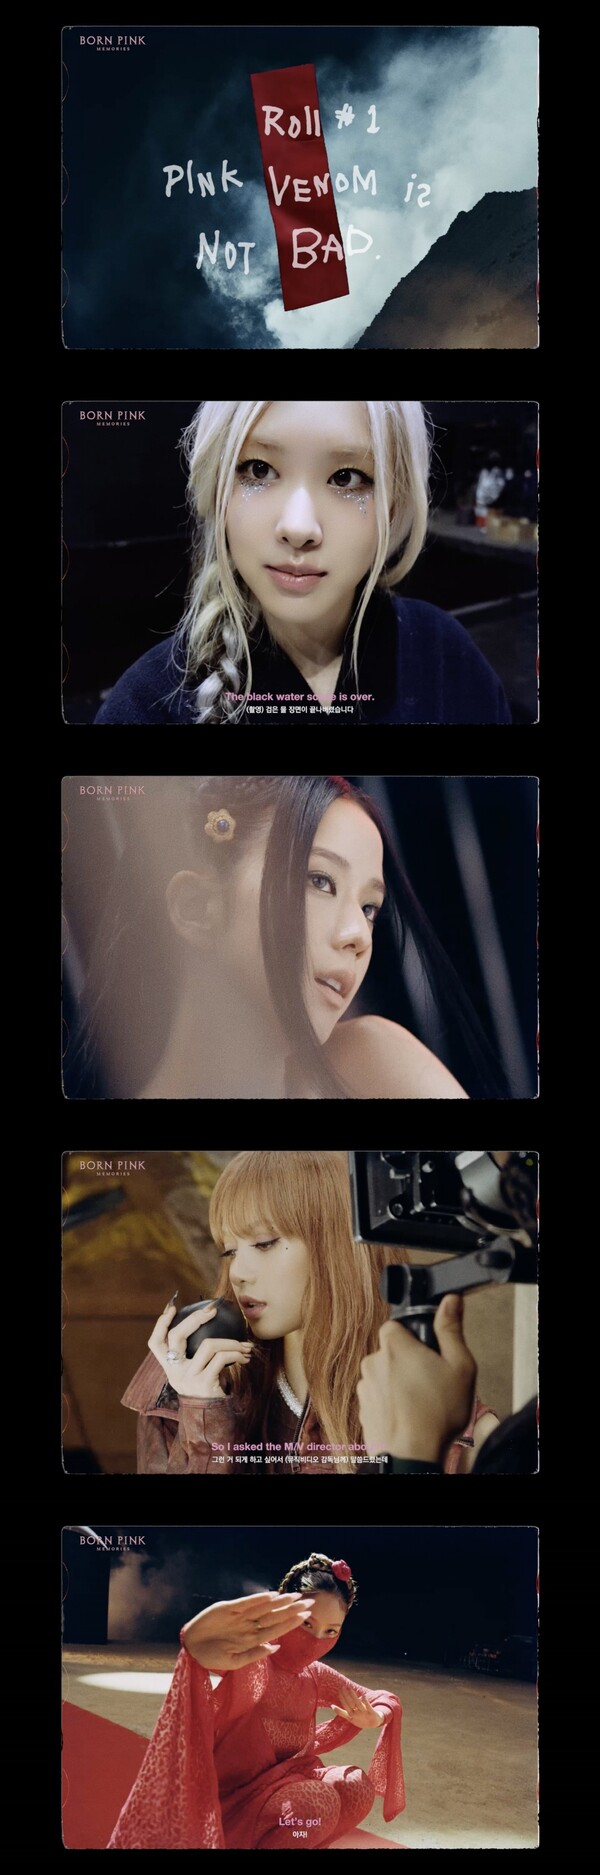 ▲ 블랙핑크 '핑크 베놈' 뮤직비디오 비하인드 영상. 제공|YG엔터테인먼트